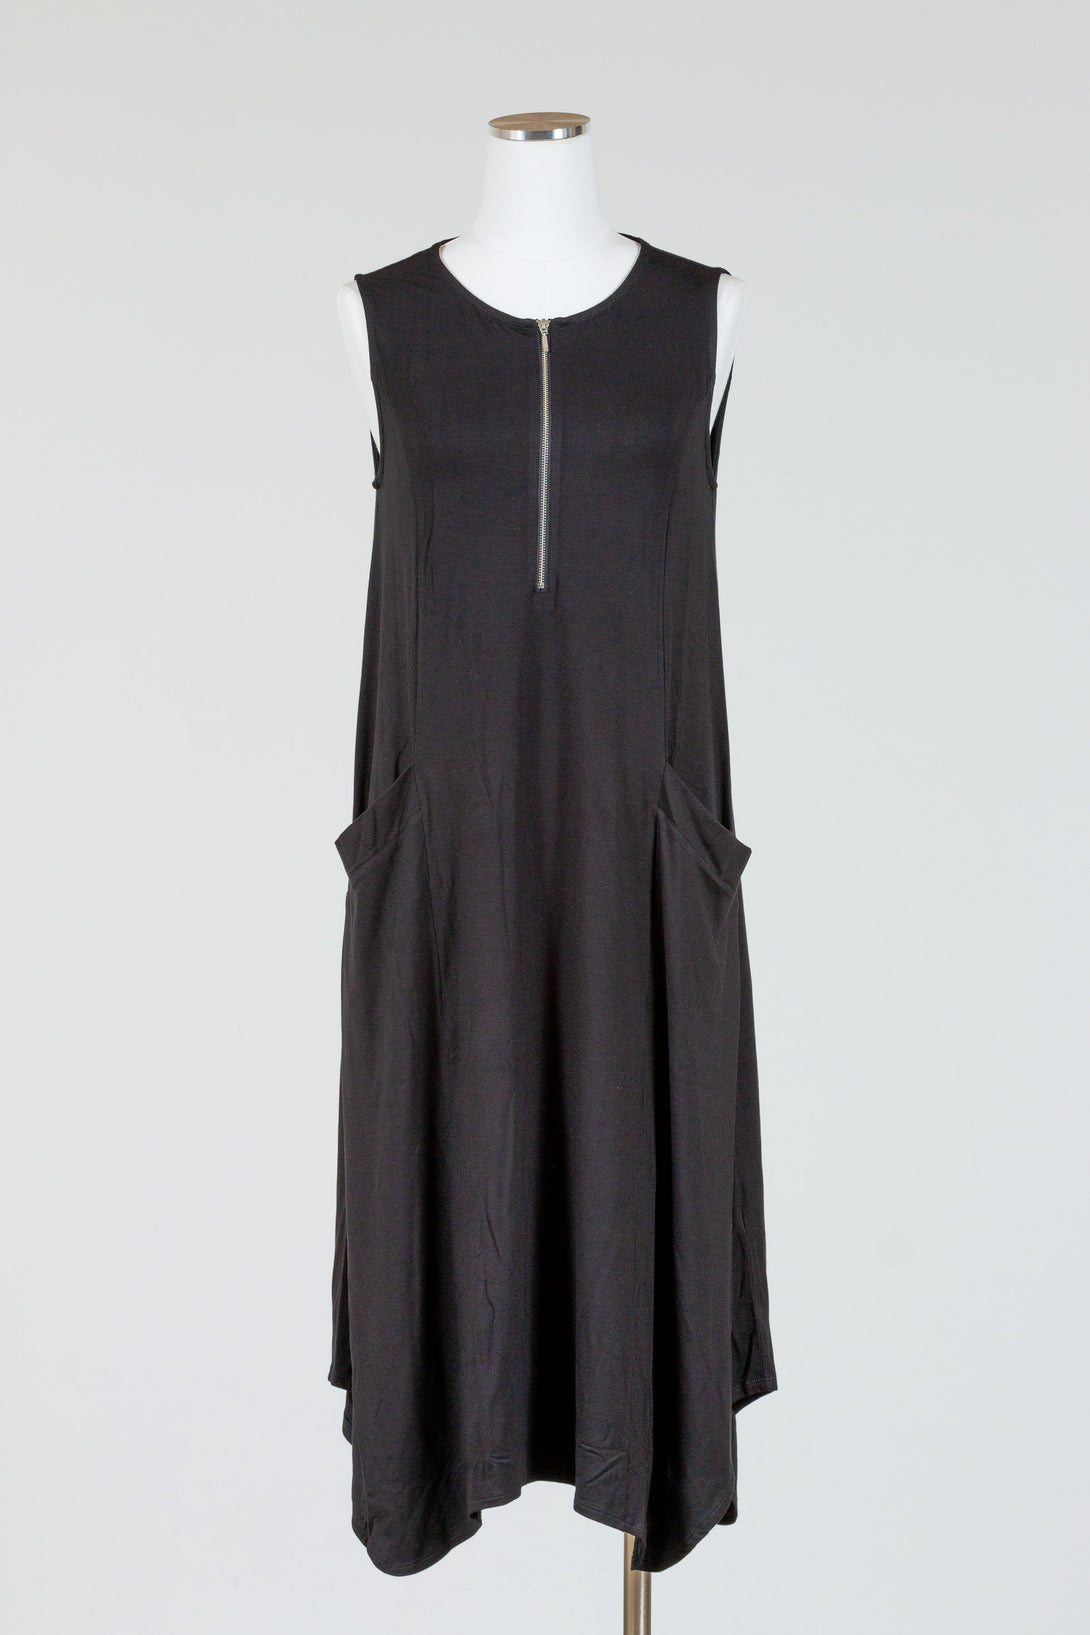 LIV-Habitat-Arthouse-Knit-ZipIt-Dress-Black